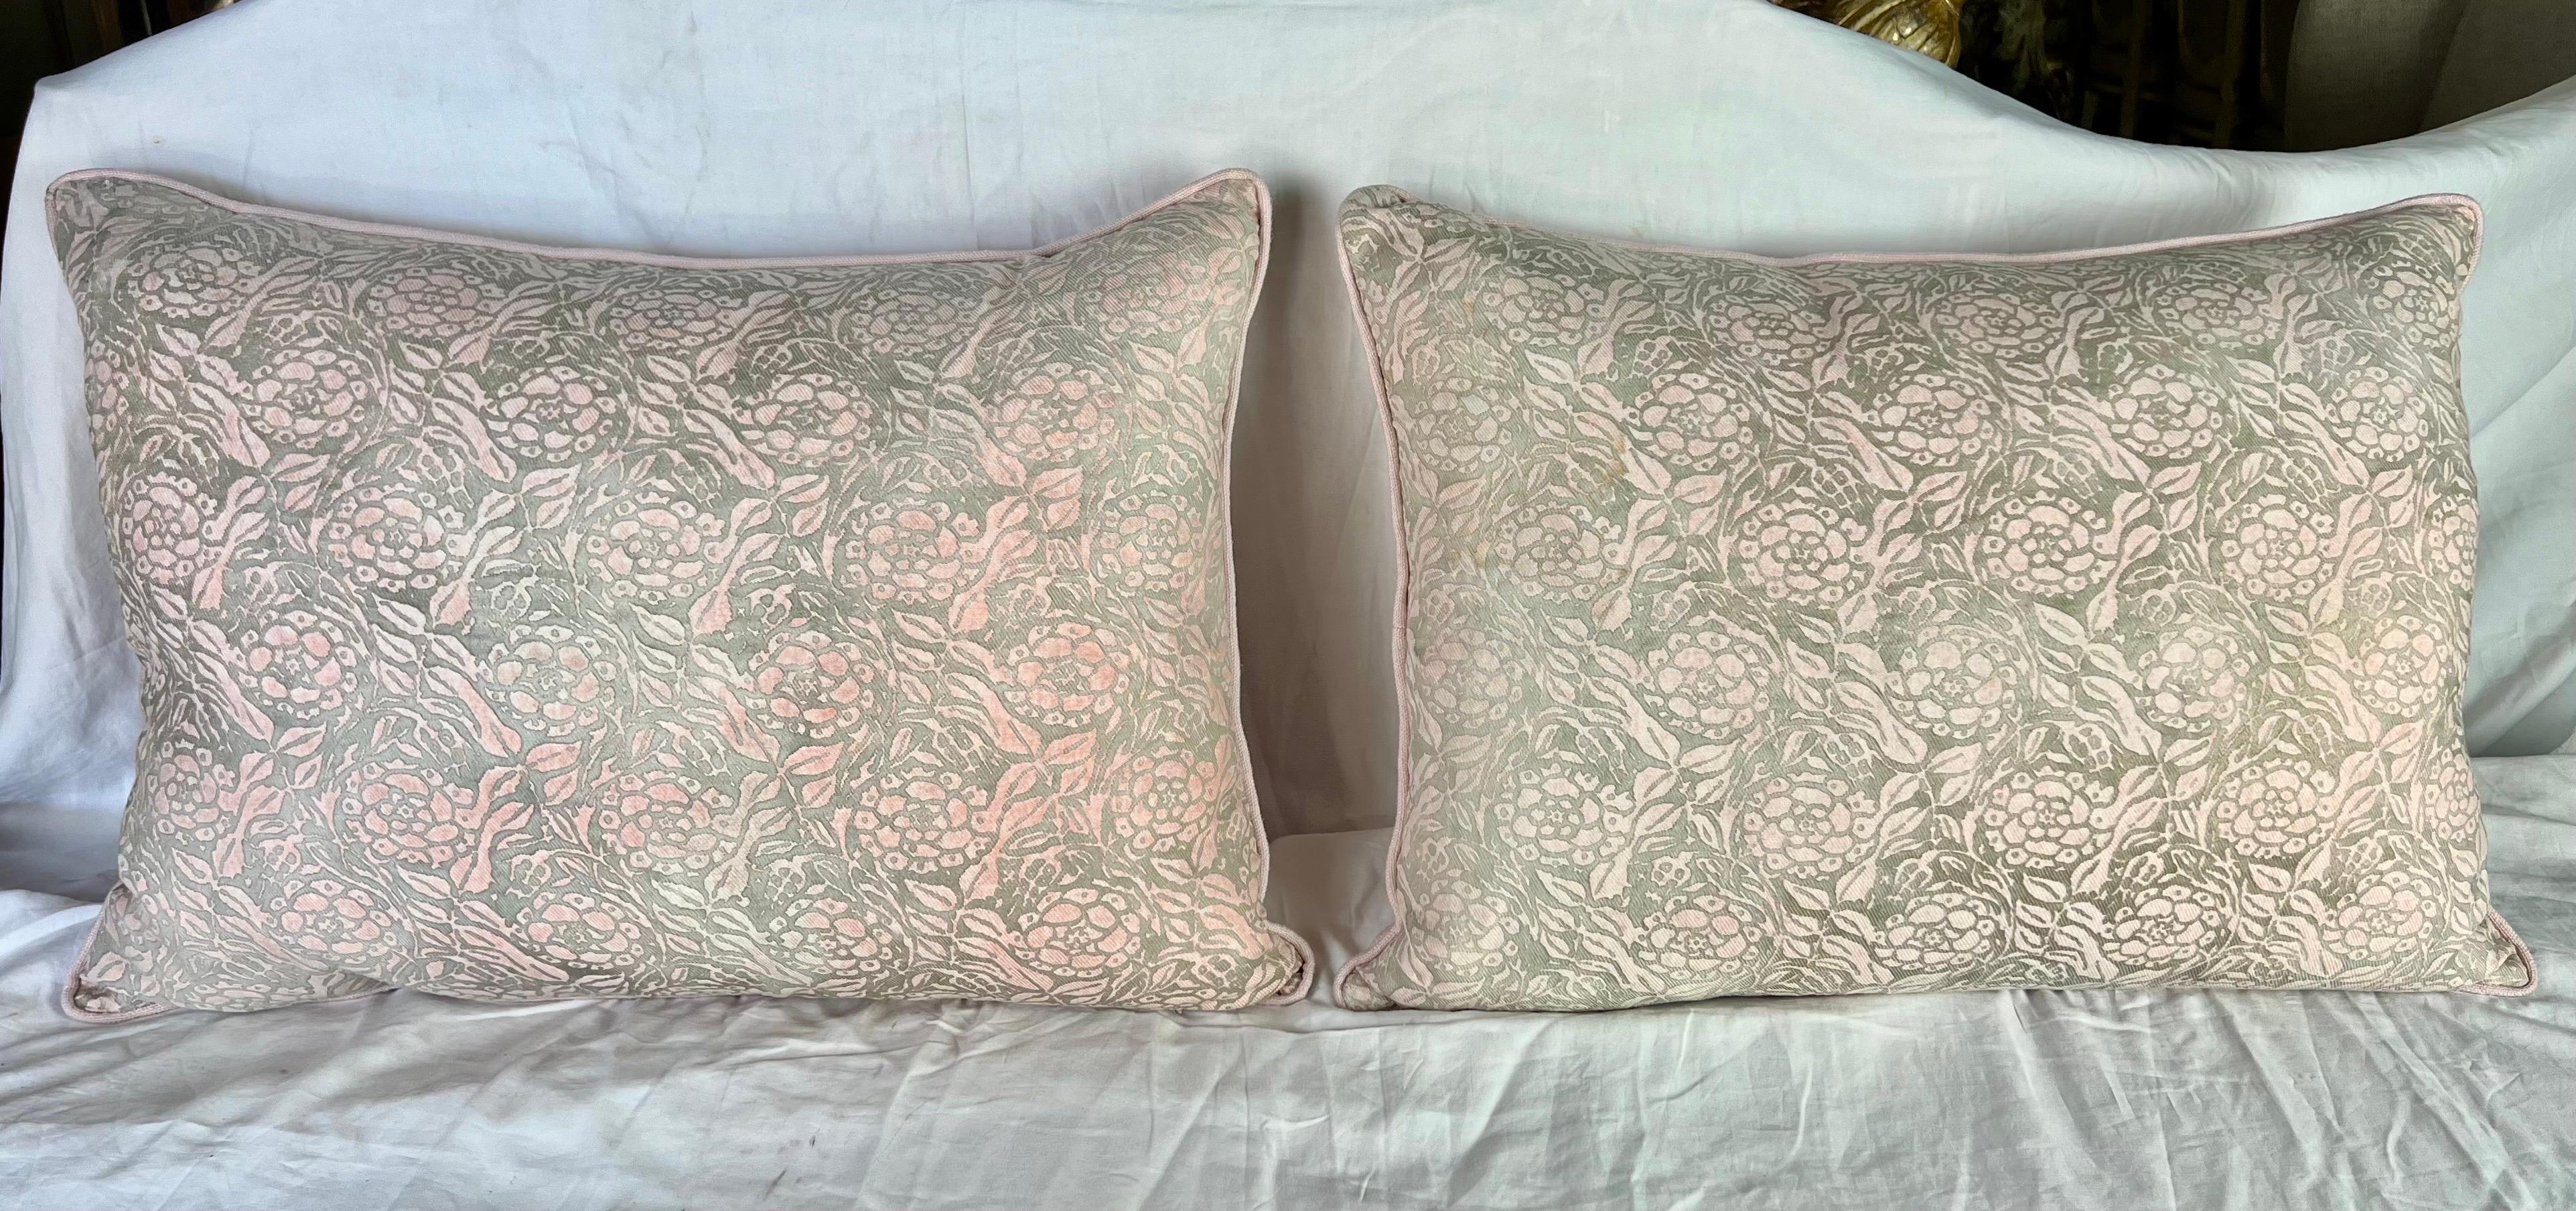 Une exquise paire de coussins en textile Fortuny du milieu du XXe siècle en rose et or, complétés par des dos en lin rose pétale, conçus par le talentueux Mariano Fortuny.